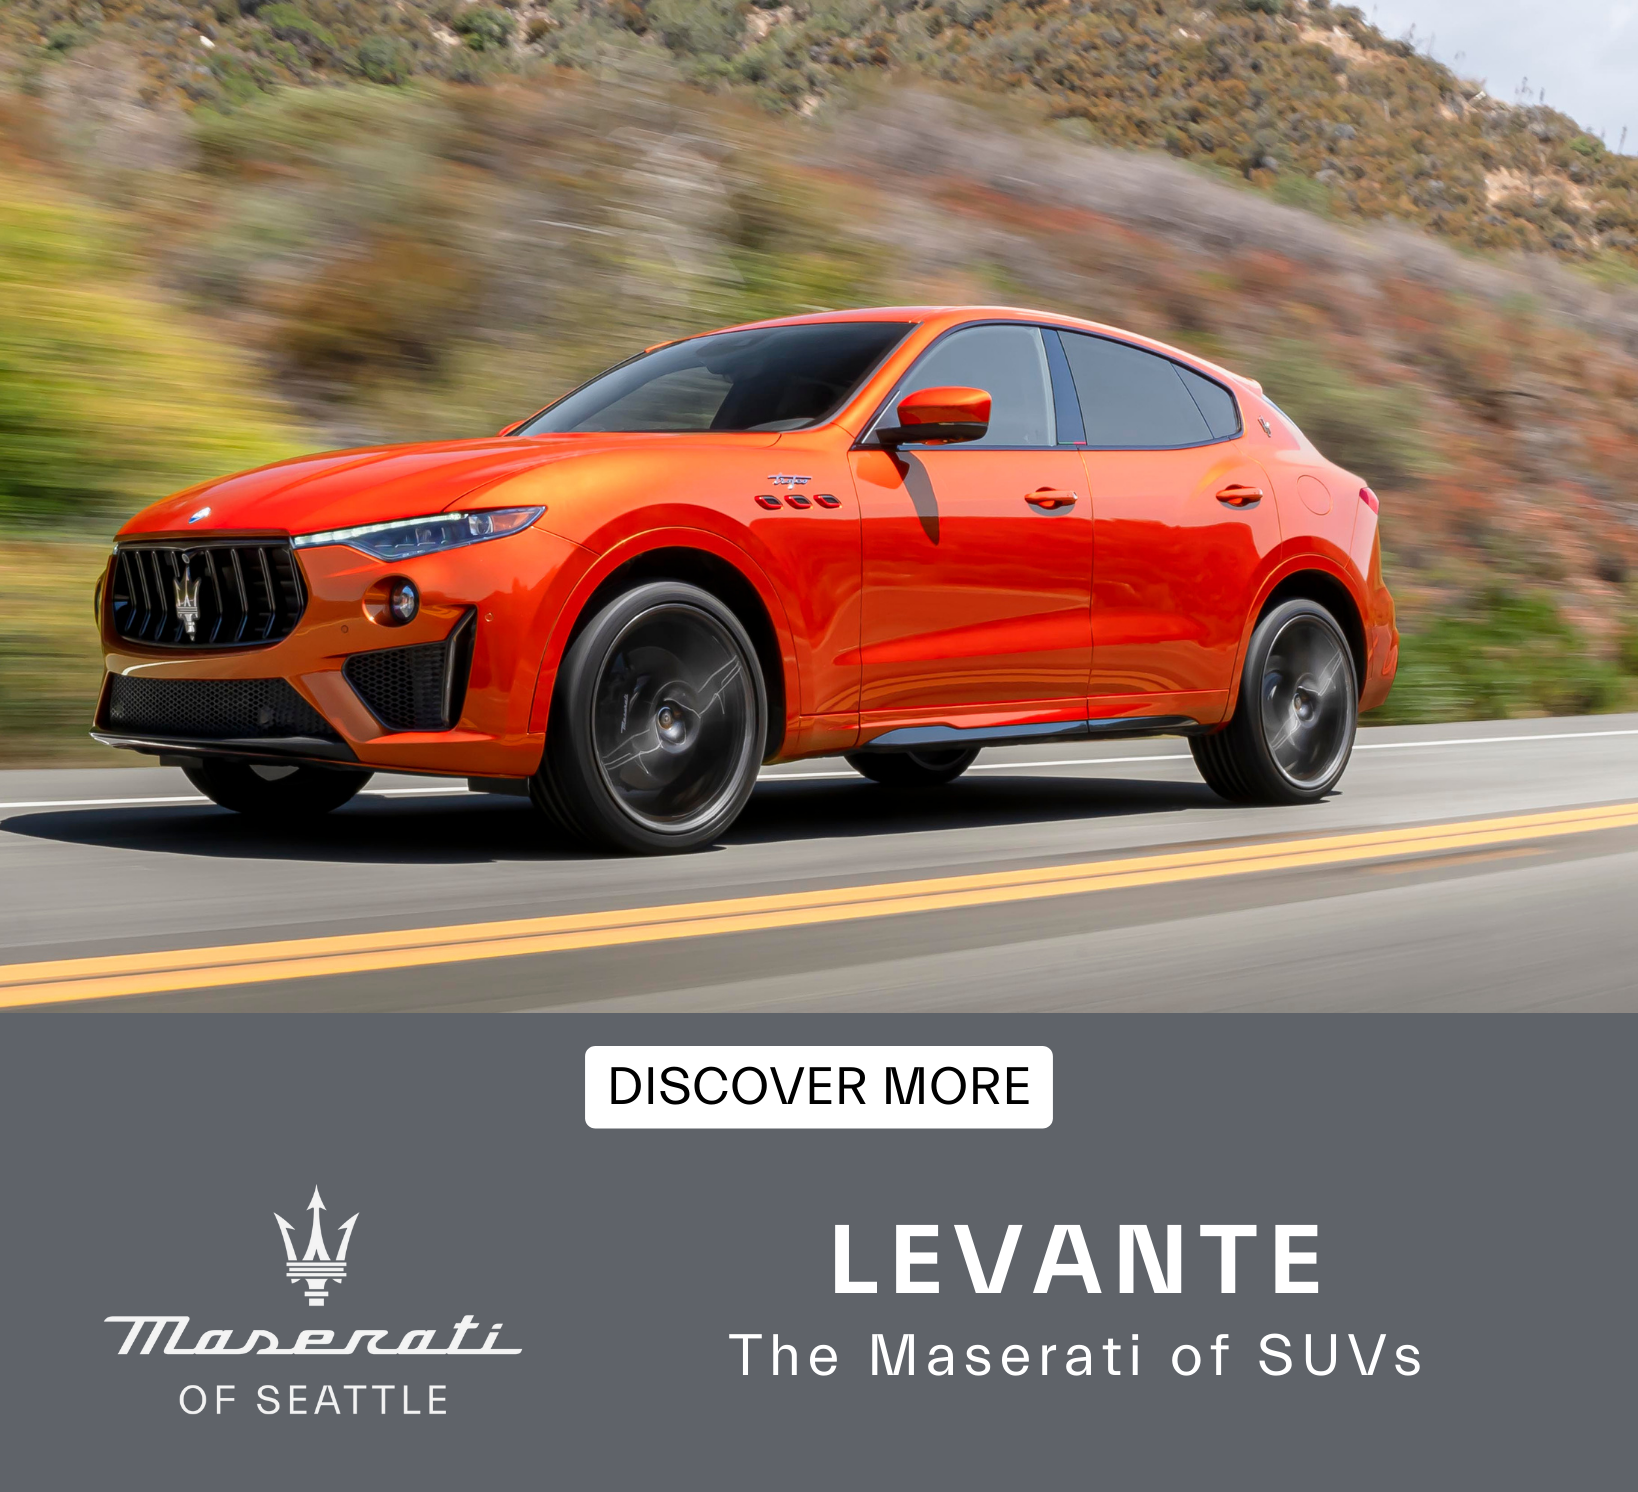 Levante The Maserati of SUVs